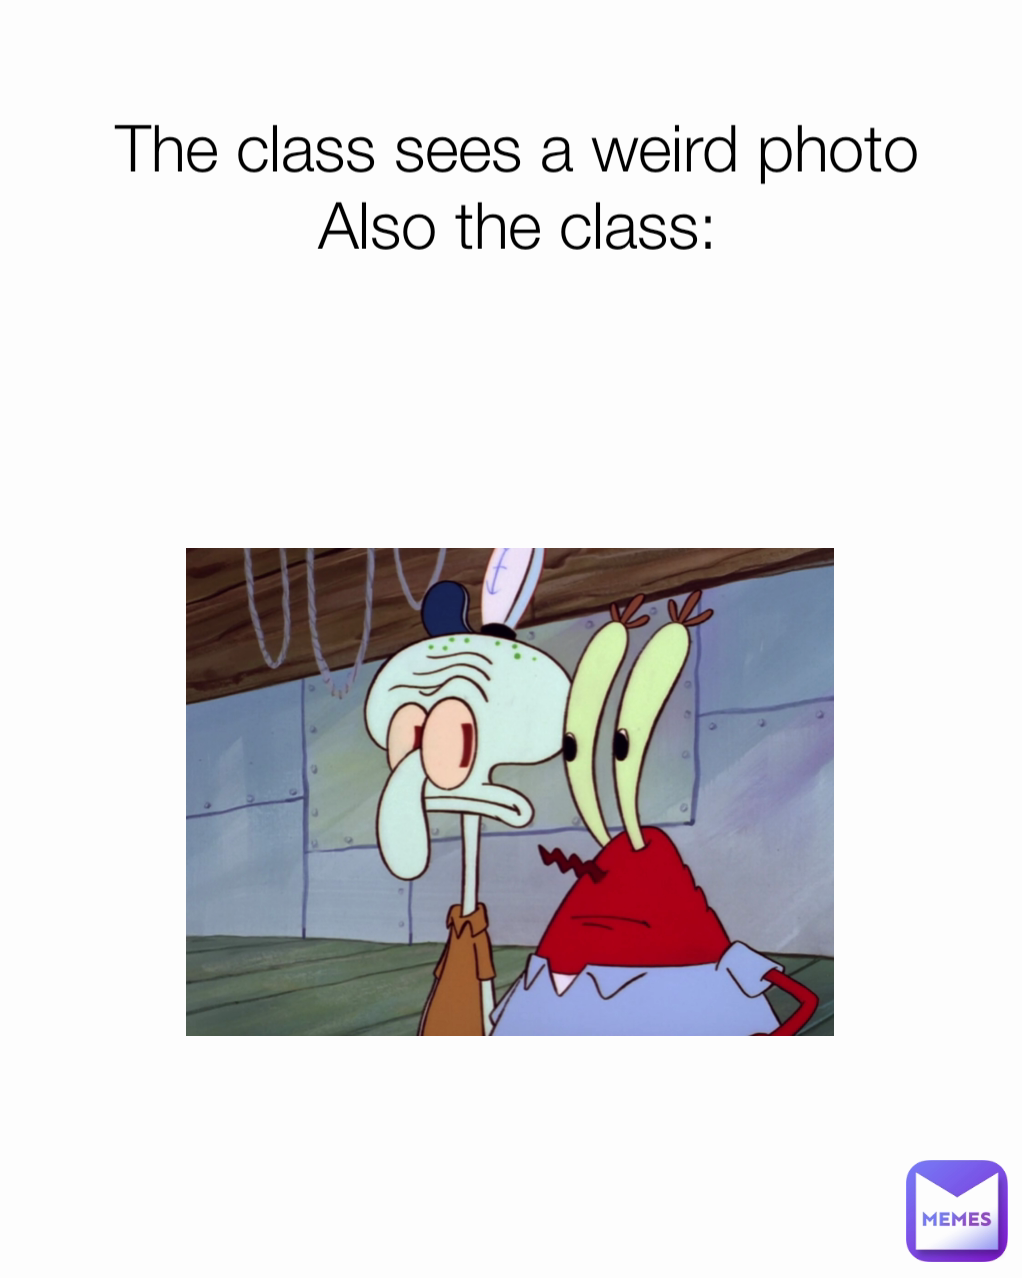 The class sees a weird photo
Also the class: